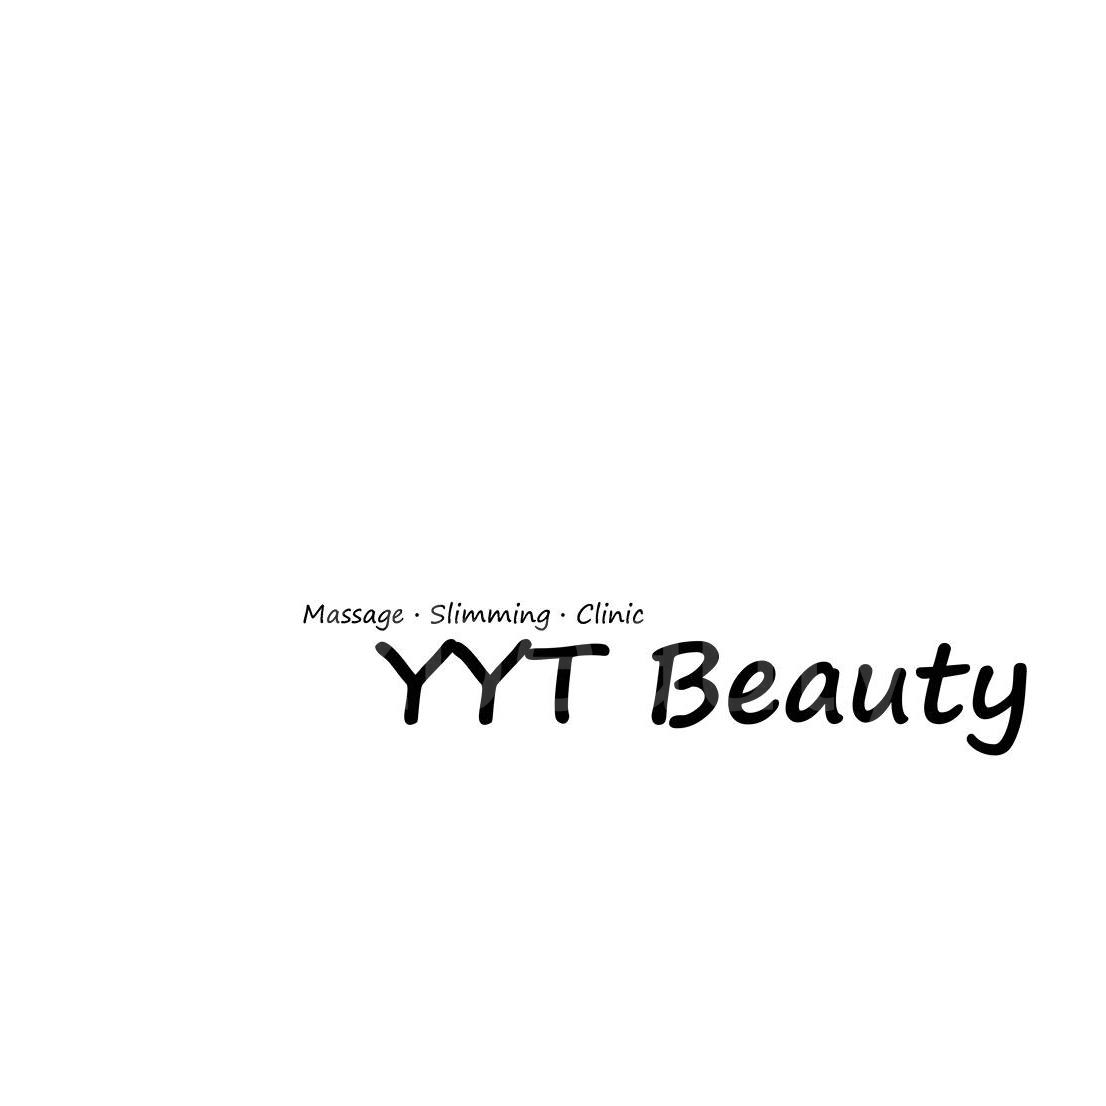 光学美容: YYT Beauty (觀塘)